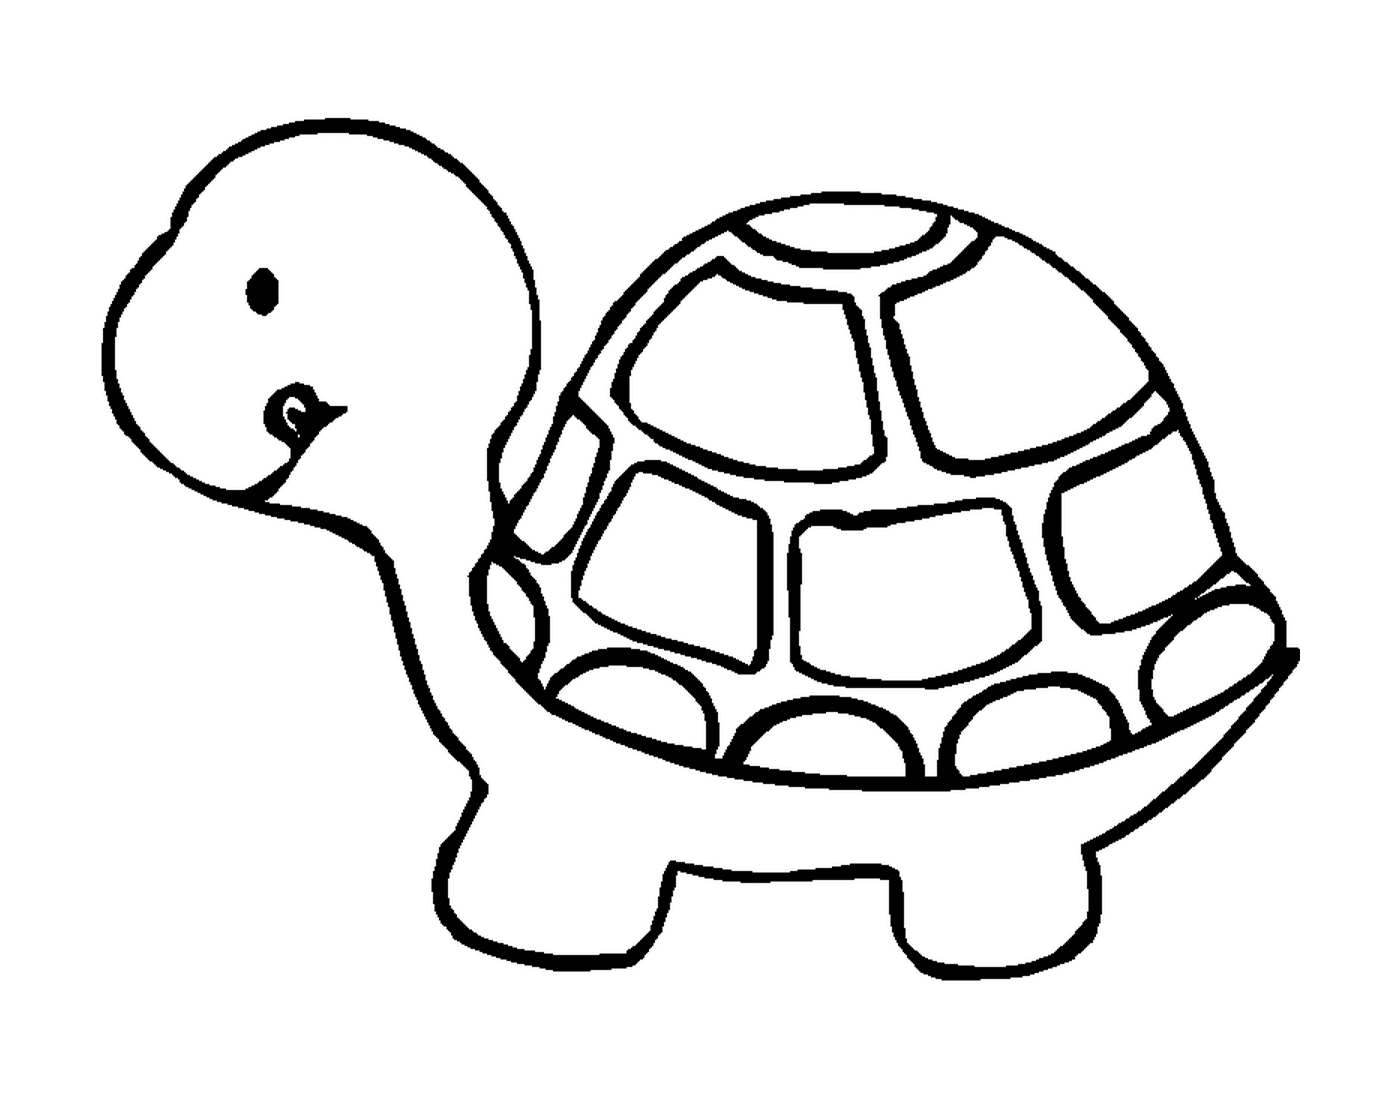  A profile turtle 